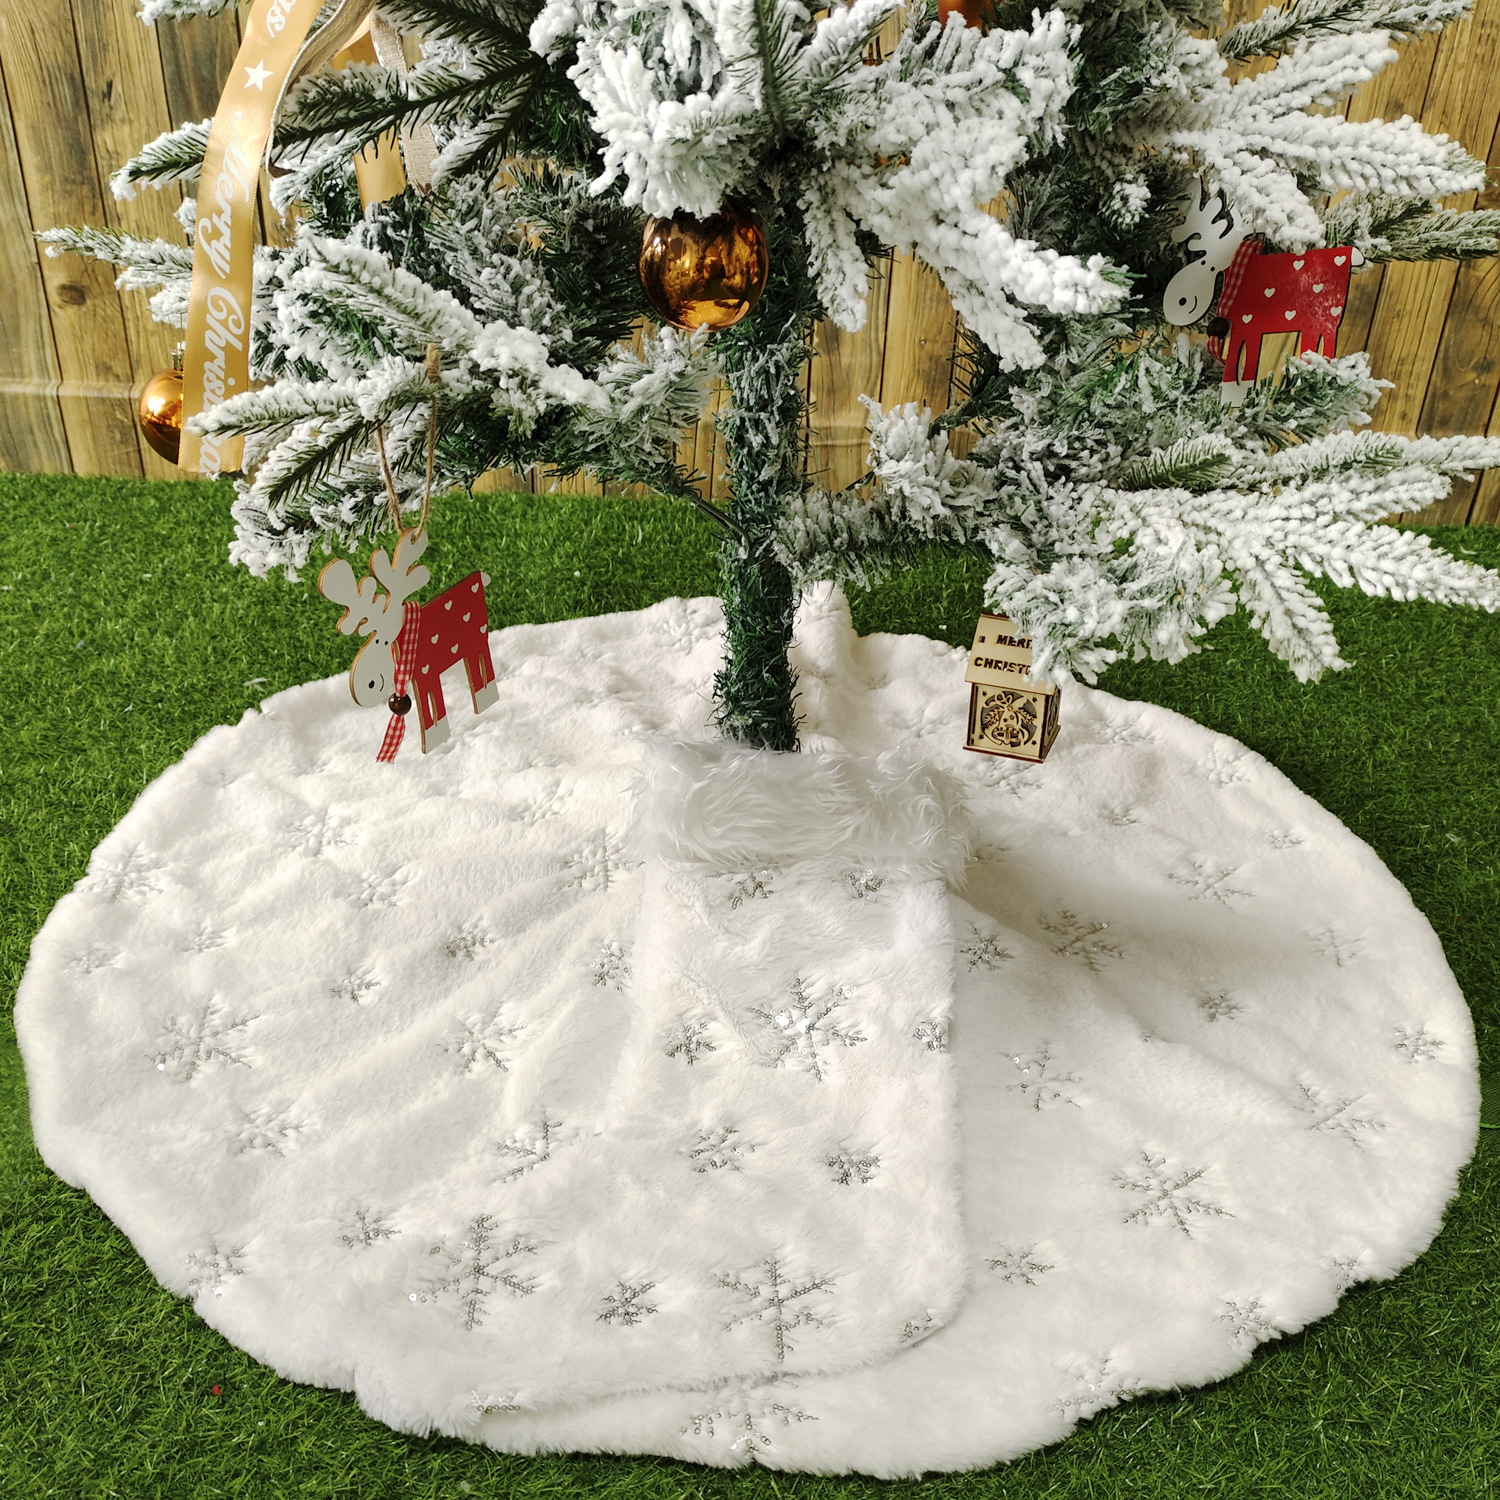 Sequins snowflake Christmas tree skirt 90cm additional Christmas stockings